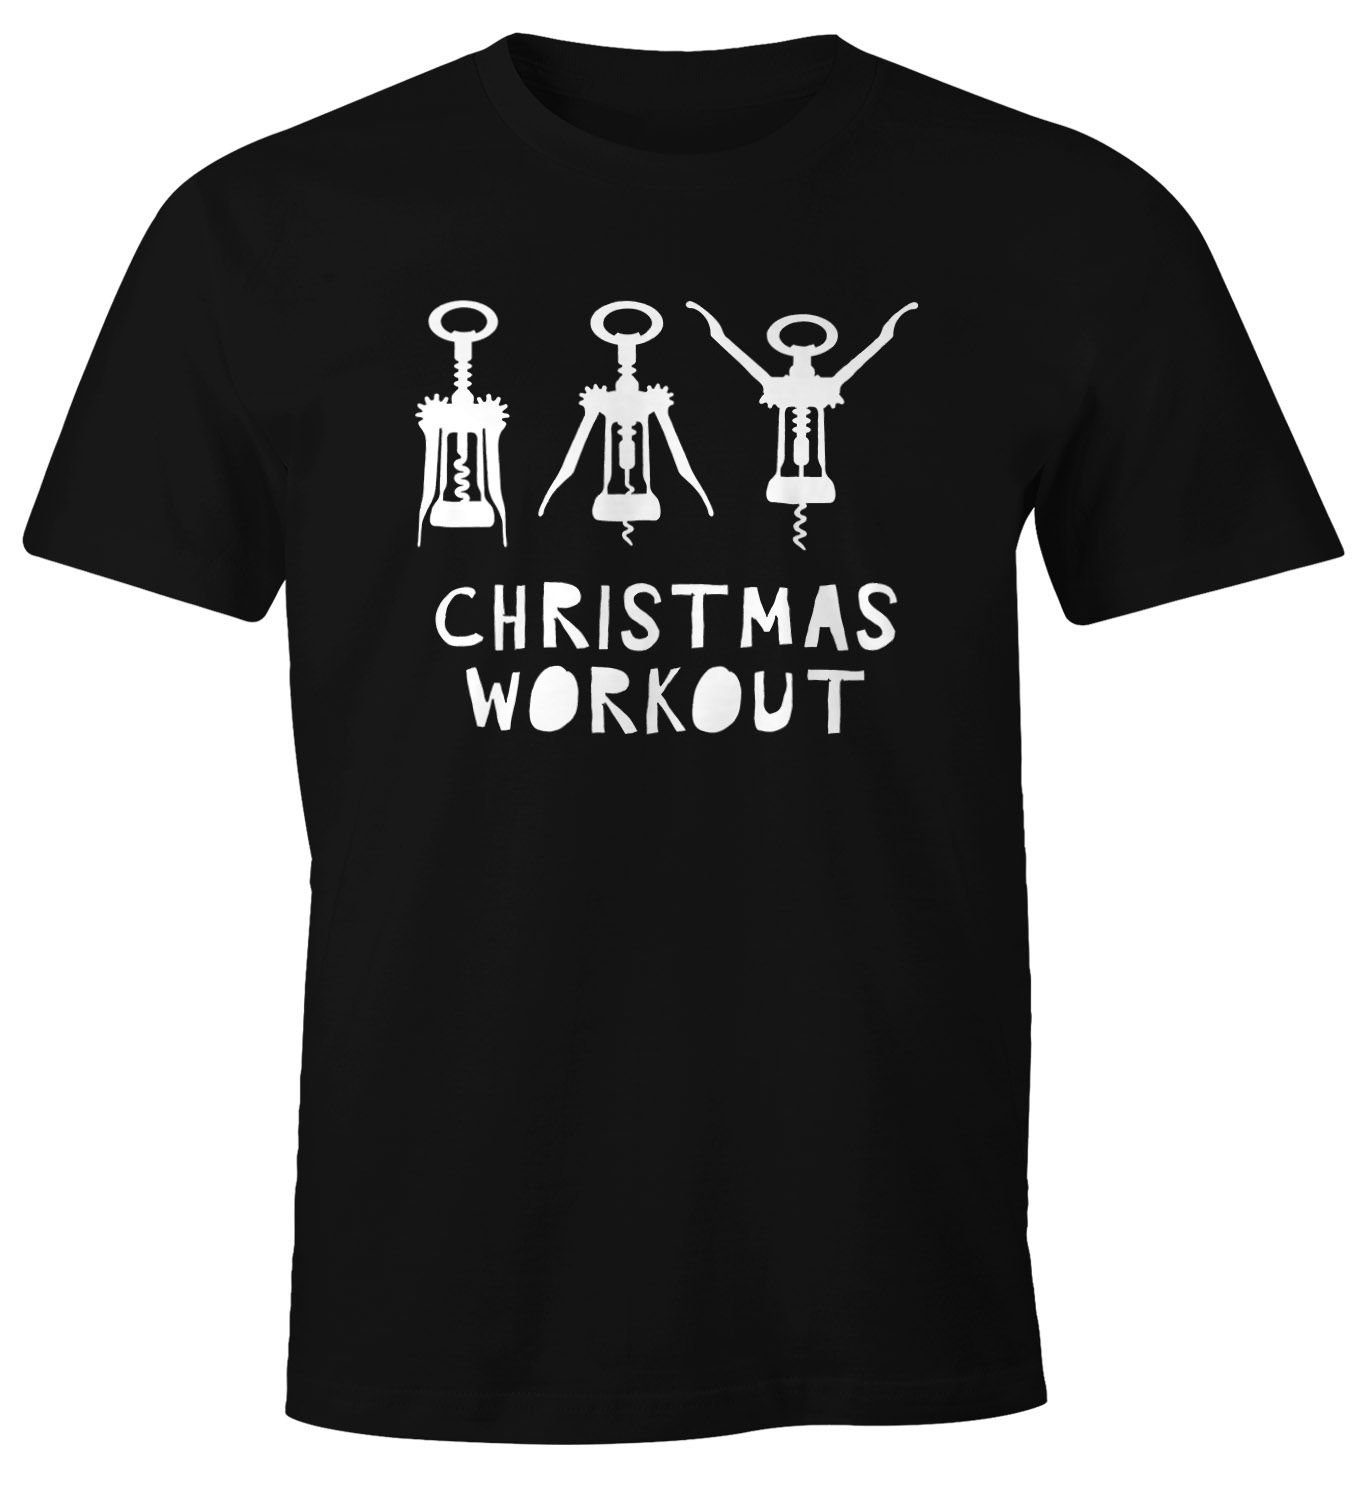 Moonworks® Herren Print-Shirt lustig mit Print Korkenzieher Workout Flaschenöffner Wein Weihnachten MoonWorks T-Shirt Christmas trinken Fun-Shirt schwarz